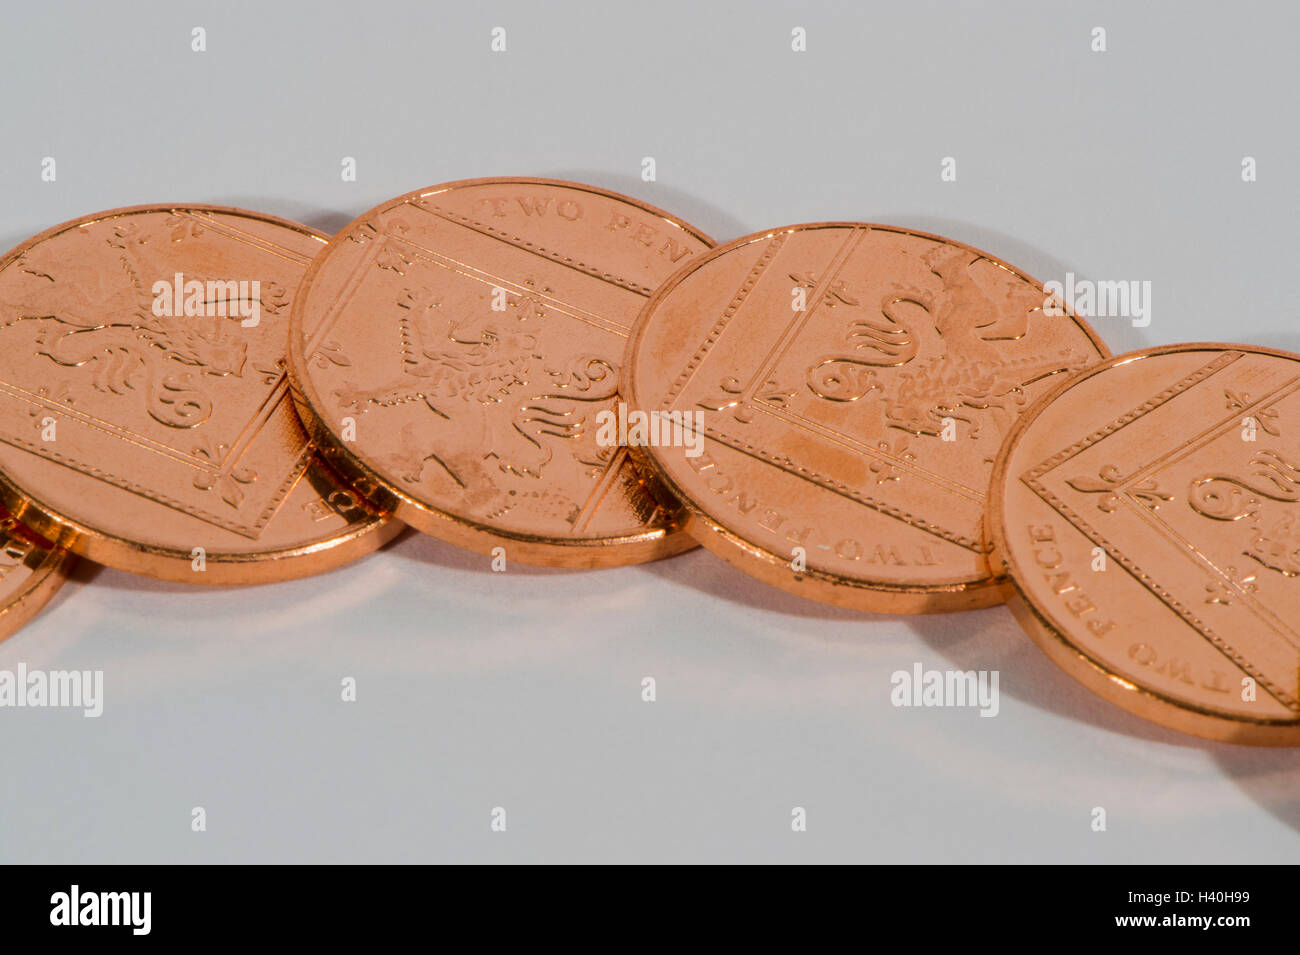 Flach und überlappend, 4 Blank, Kupfer, zwei Pence, UK Münzen, Tails up - locker-Änderung und Geld mit geringem Wert. Stockfoto